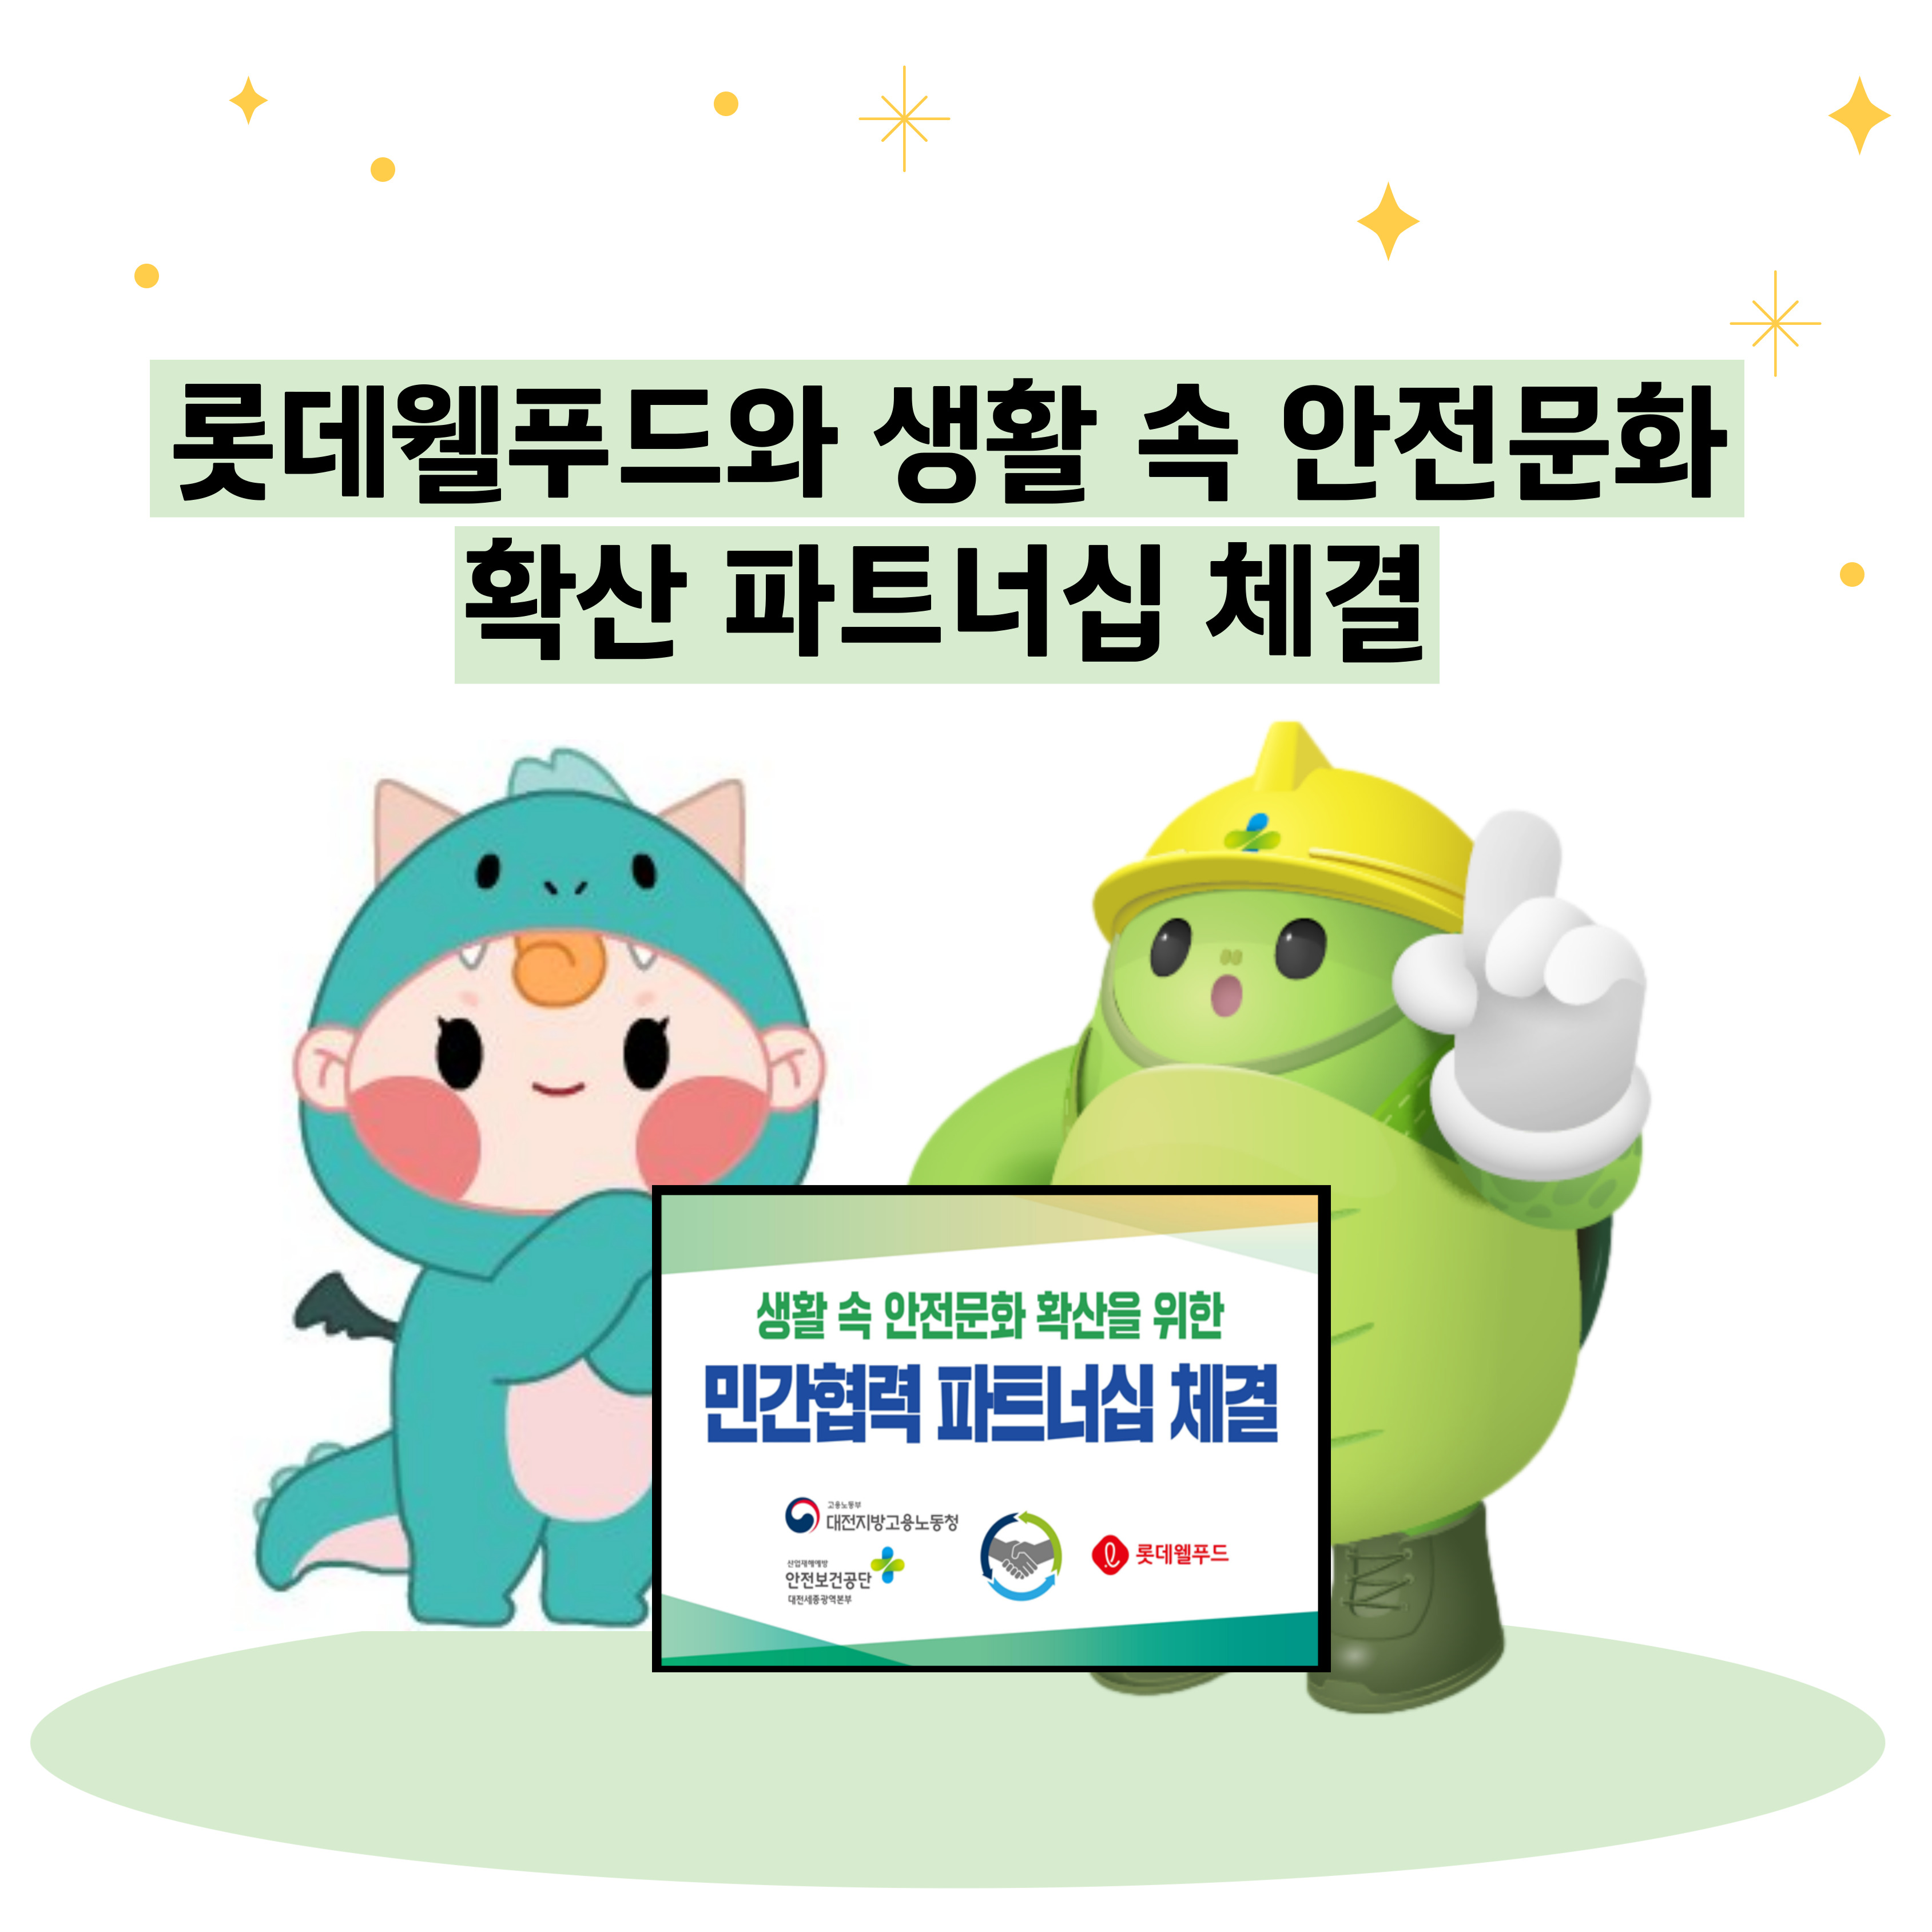 [대전세종] 대전노동청-안전보건공단-롯데웰푸드 생활 속 안전문화 확산 파트너십 체결